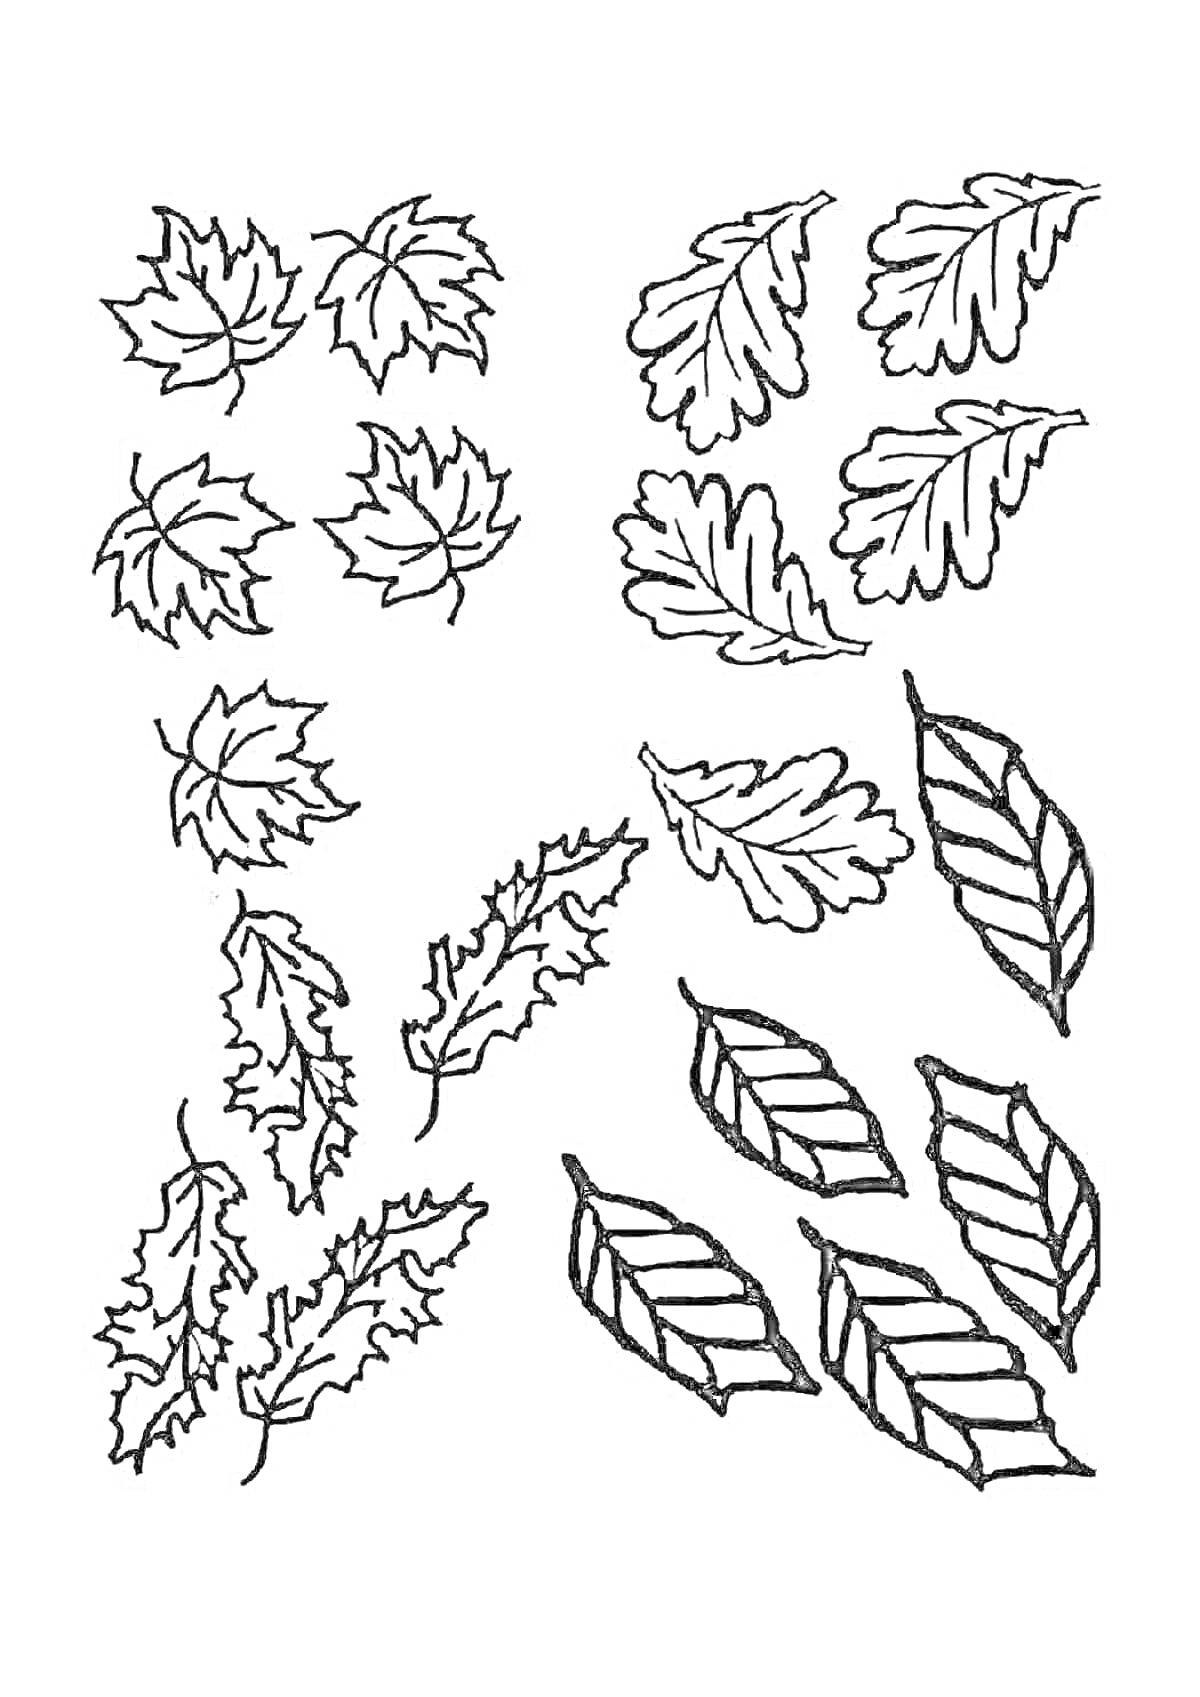 Раскраска Разные виды листьев - кленовые, дубовые, пальмовые и другие